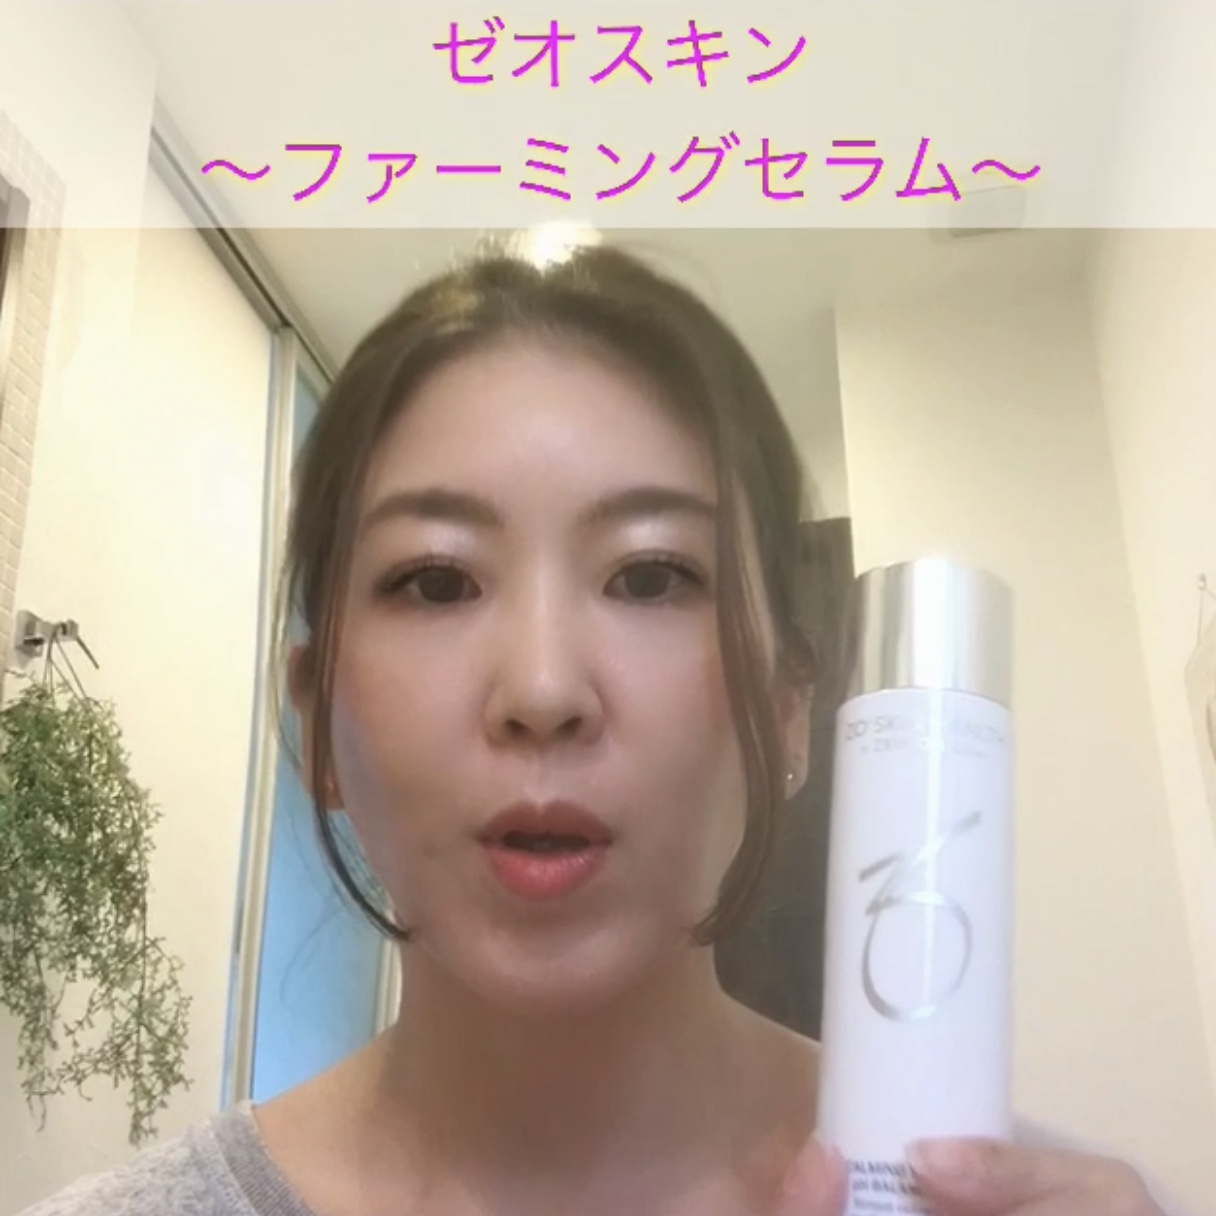 たるみ専用美容液 ファーミングセラム使用感 - 福岡市城南区の美容皮膚 